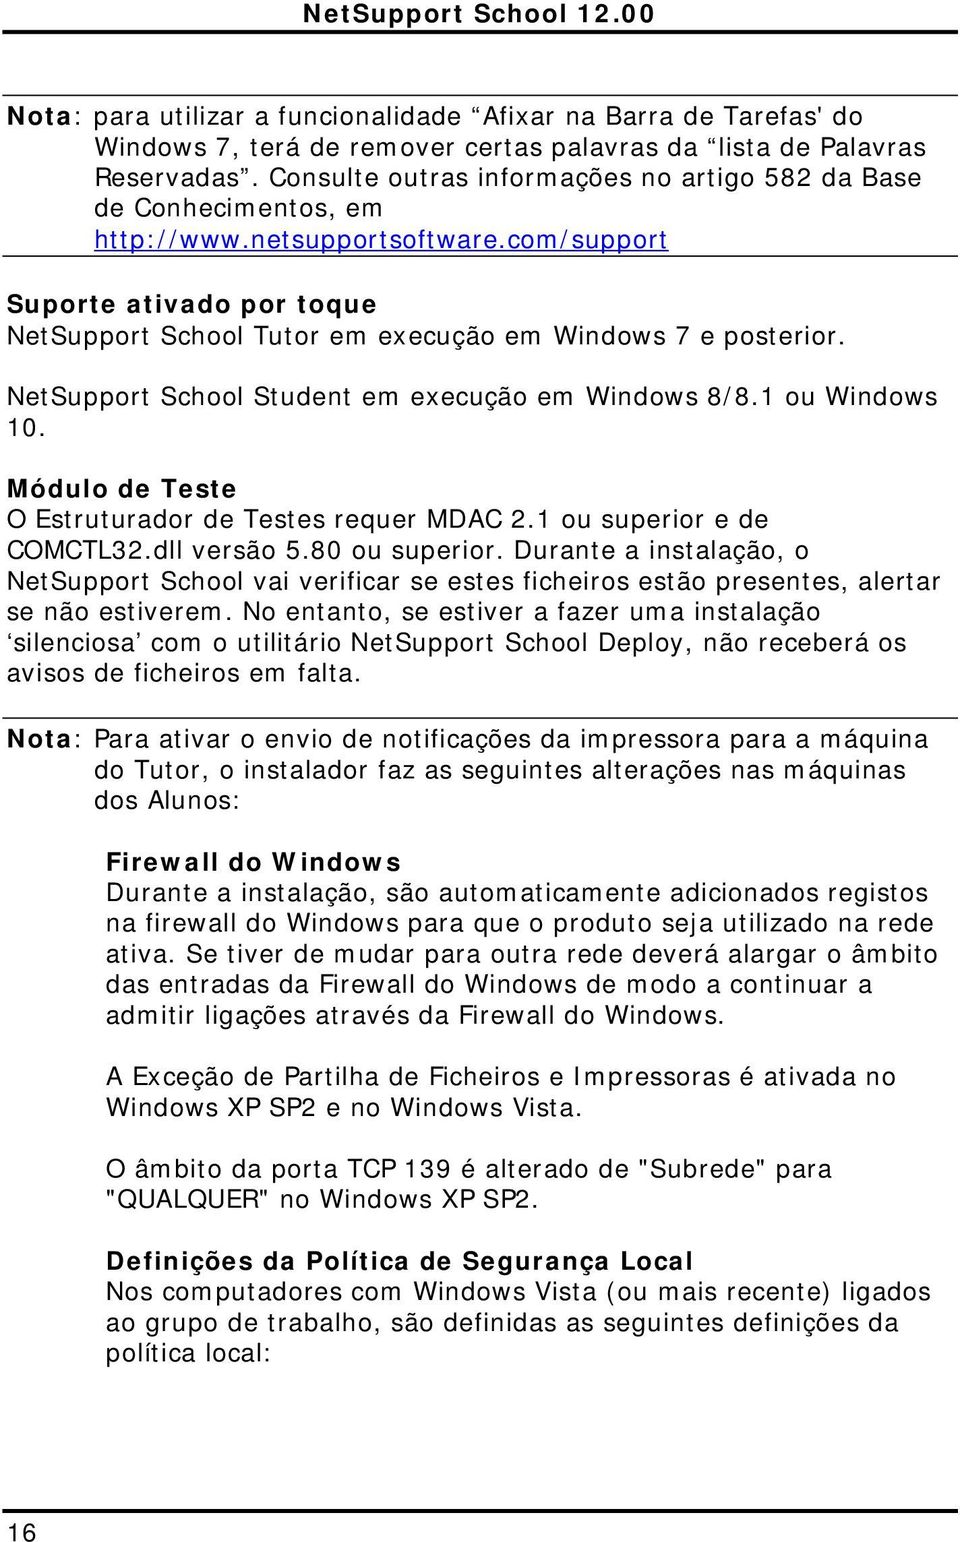 NetSupport School Student em execução em Windows 8/8.1 ou Windows 10. Módulo de Teste O Estruturador de Testes requer MDAC 2.1 ou superior e de COMCTL32.dll versão 5.80 ou superior.